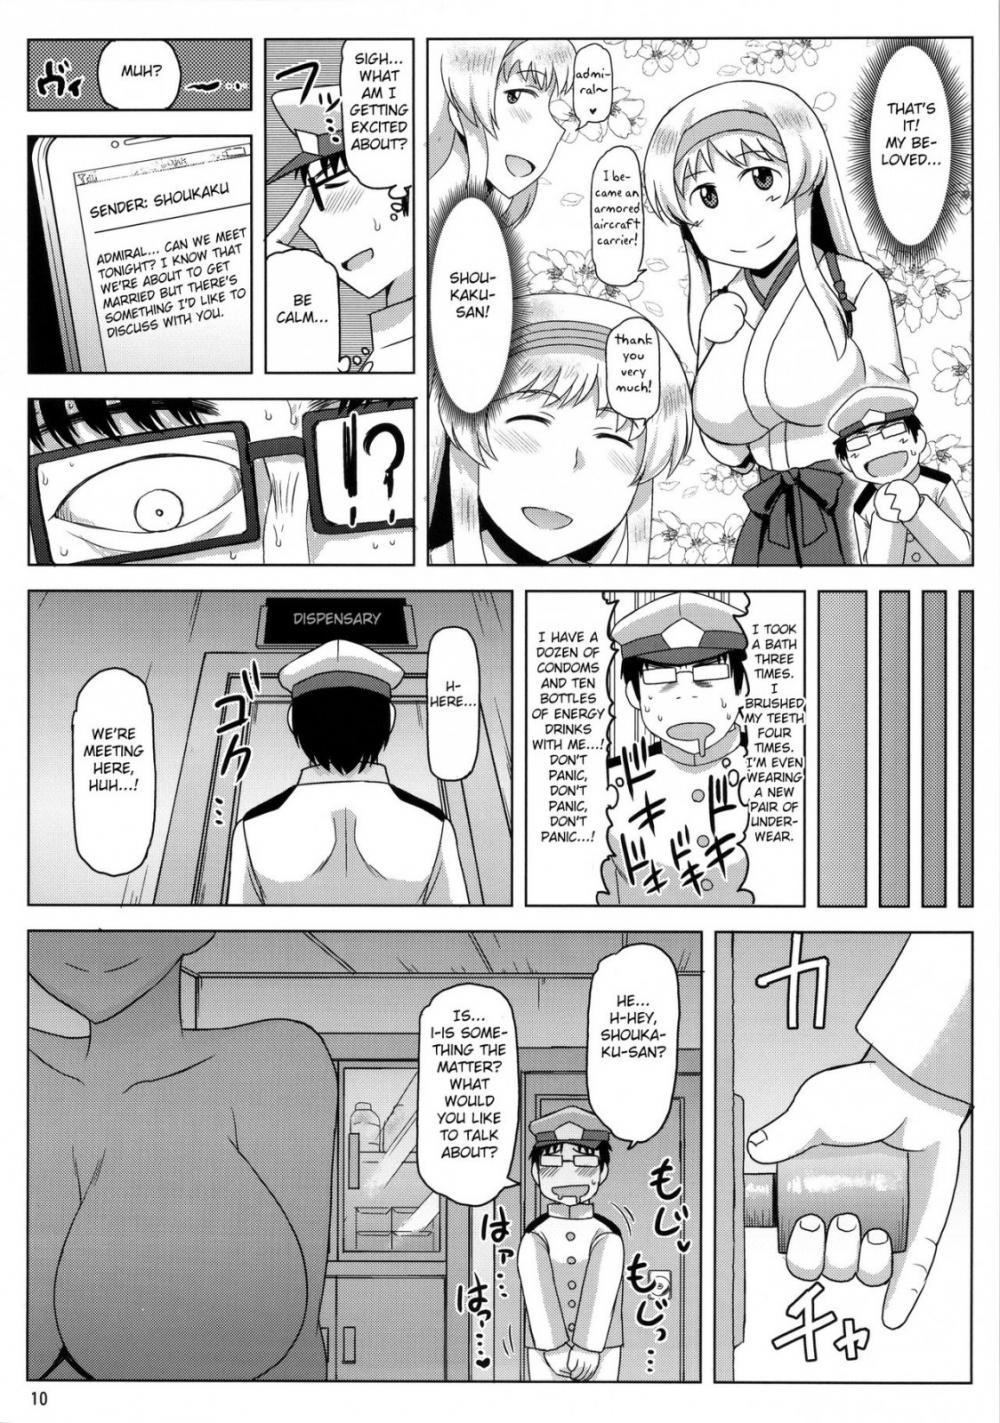 Hentai Manga Comic-A Story About Kashima Being A Lewd Bitch-Read-11